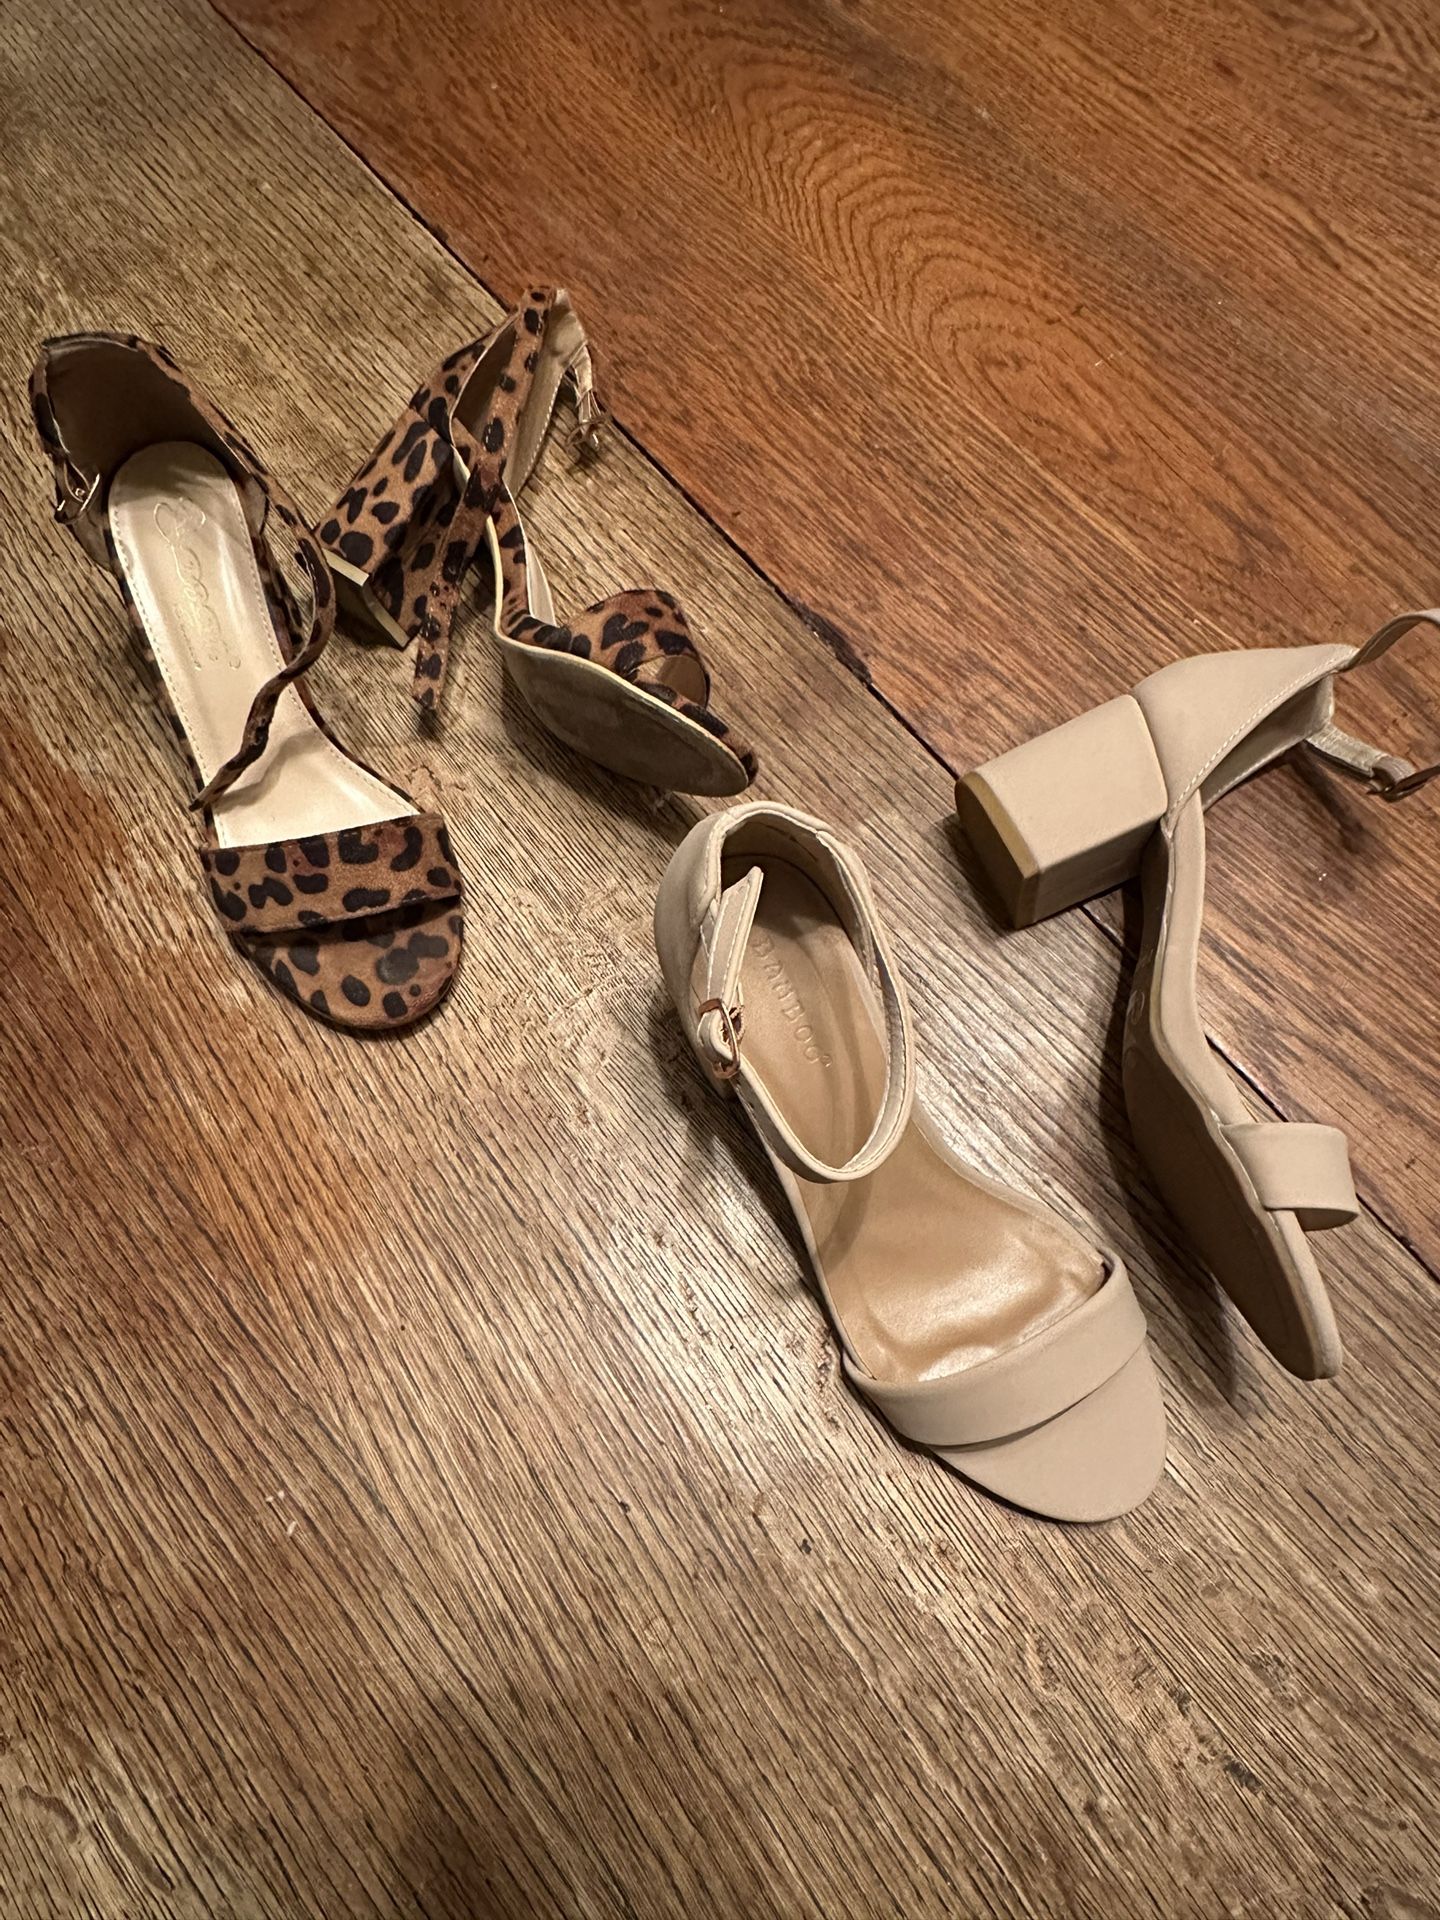 Women’s Heels - Size 5.5 : Nude & Leopard 